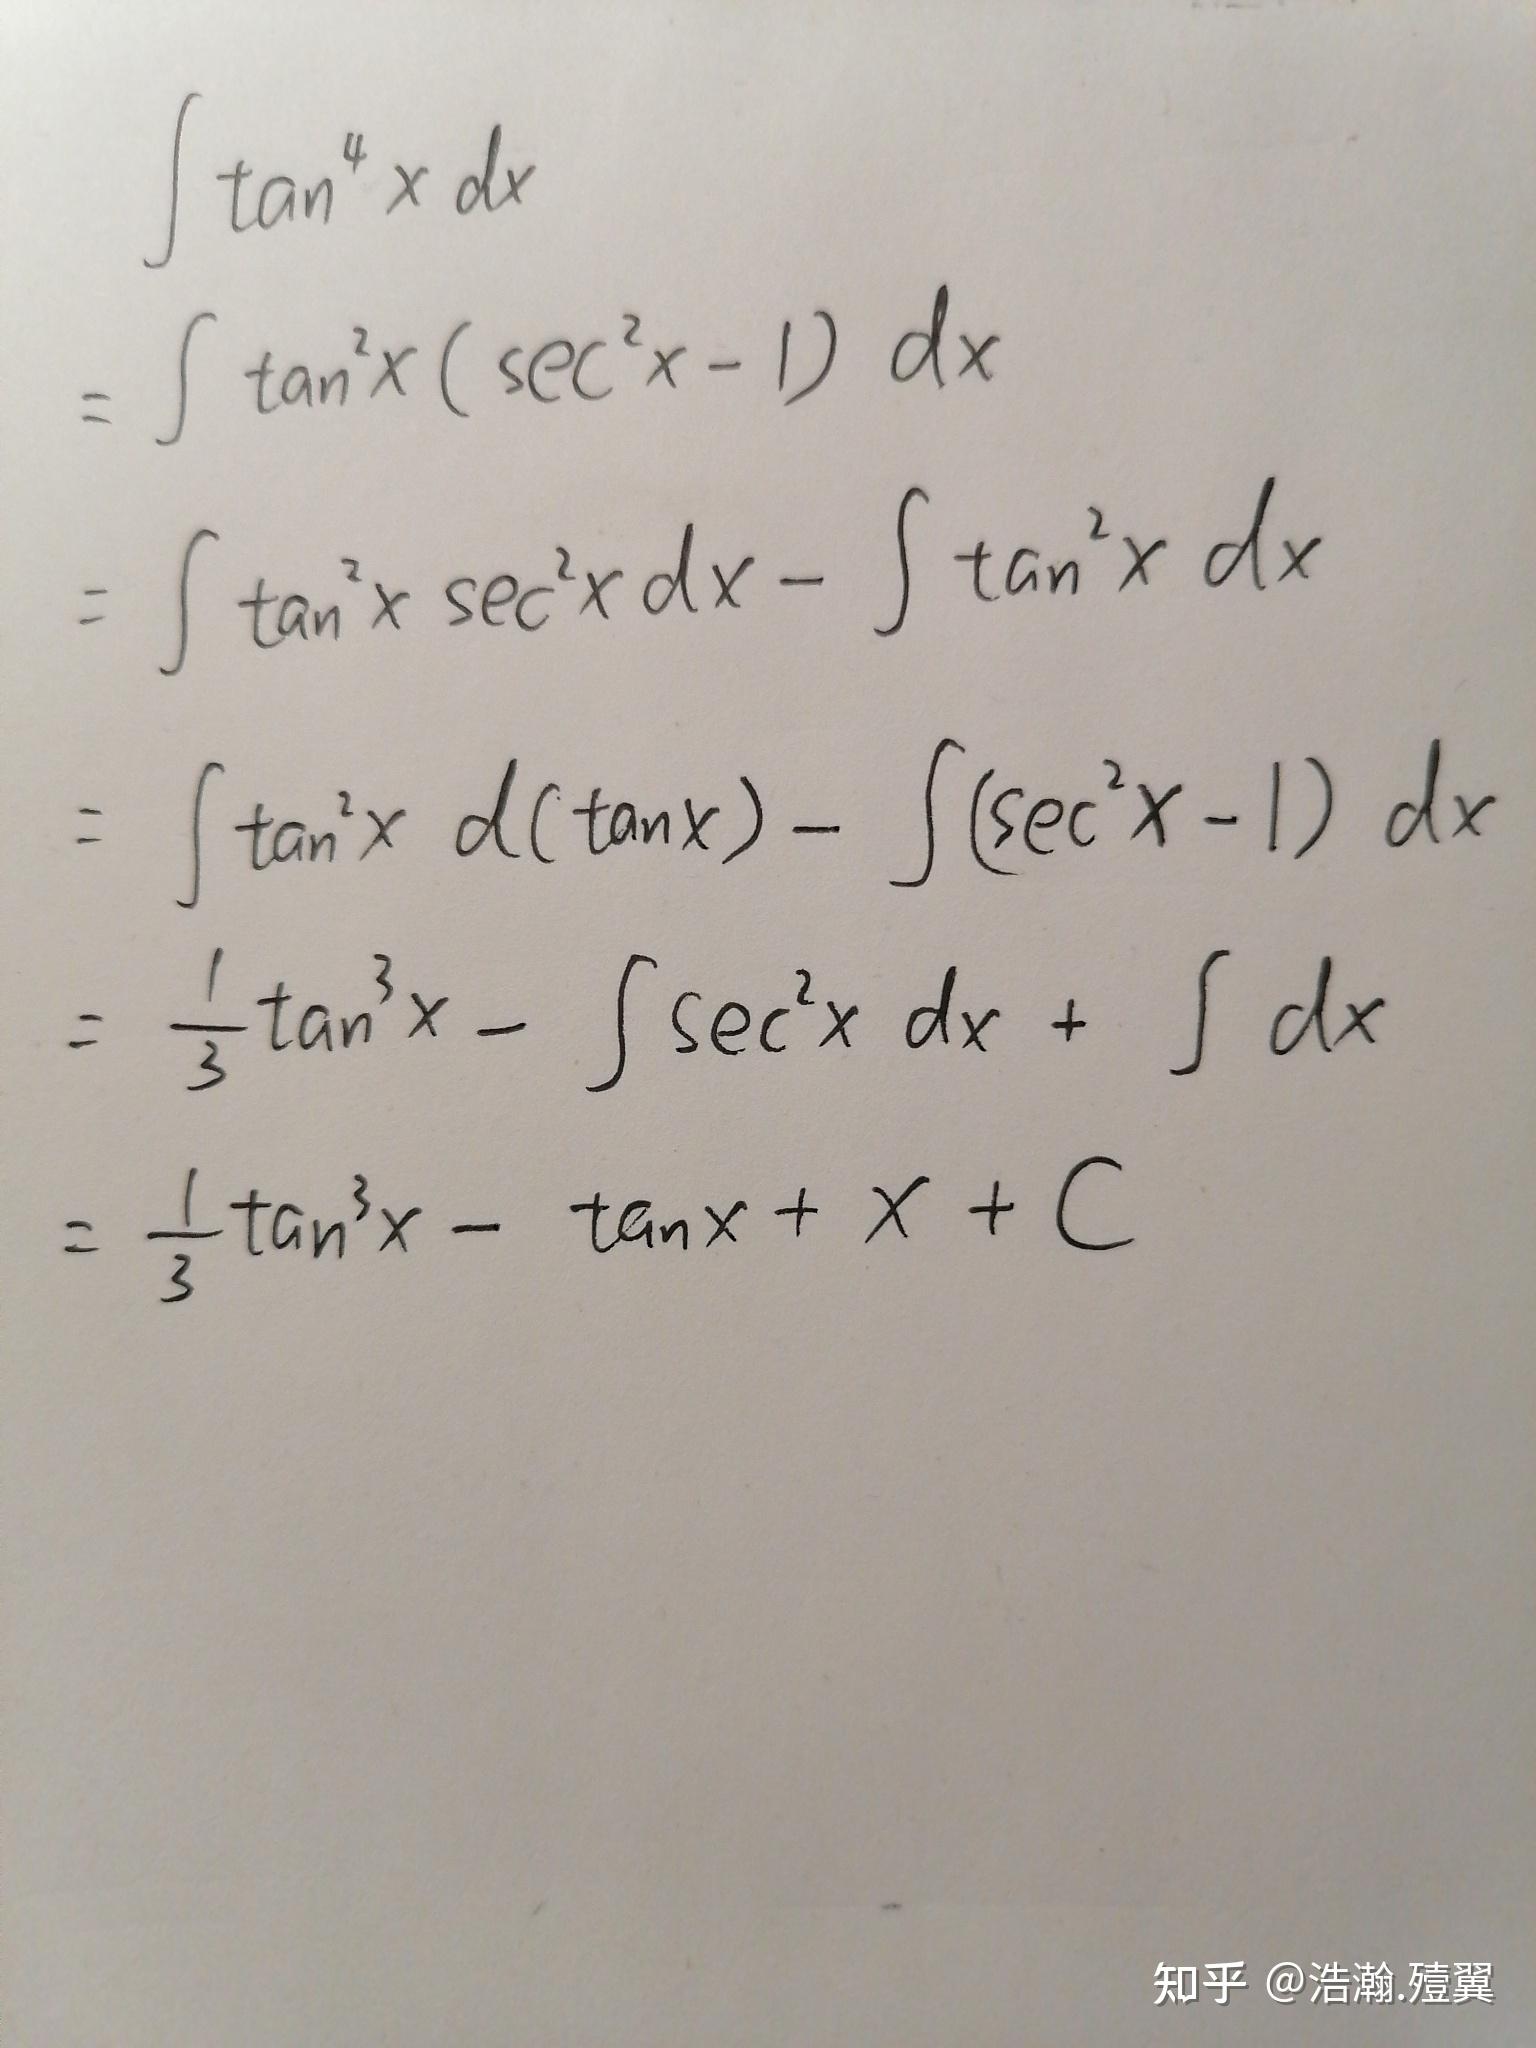 tanx-x图片